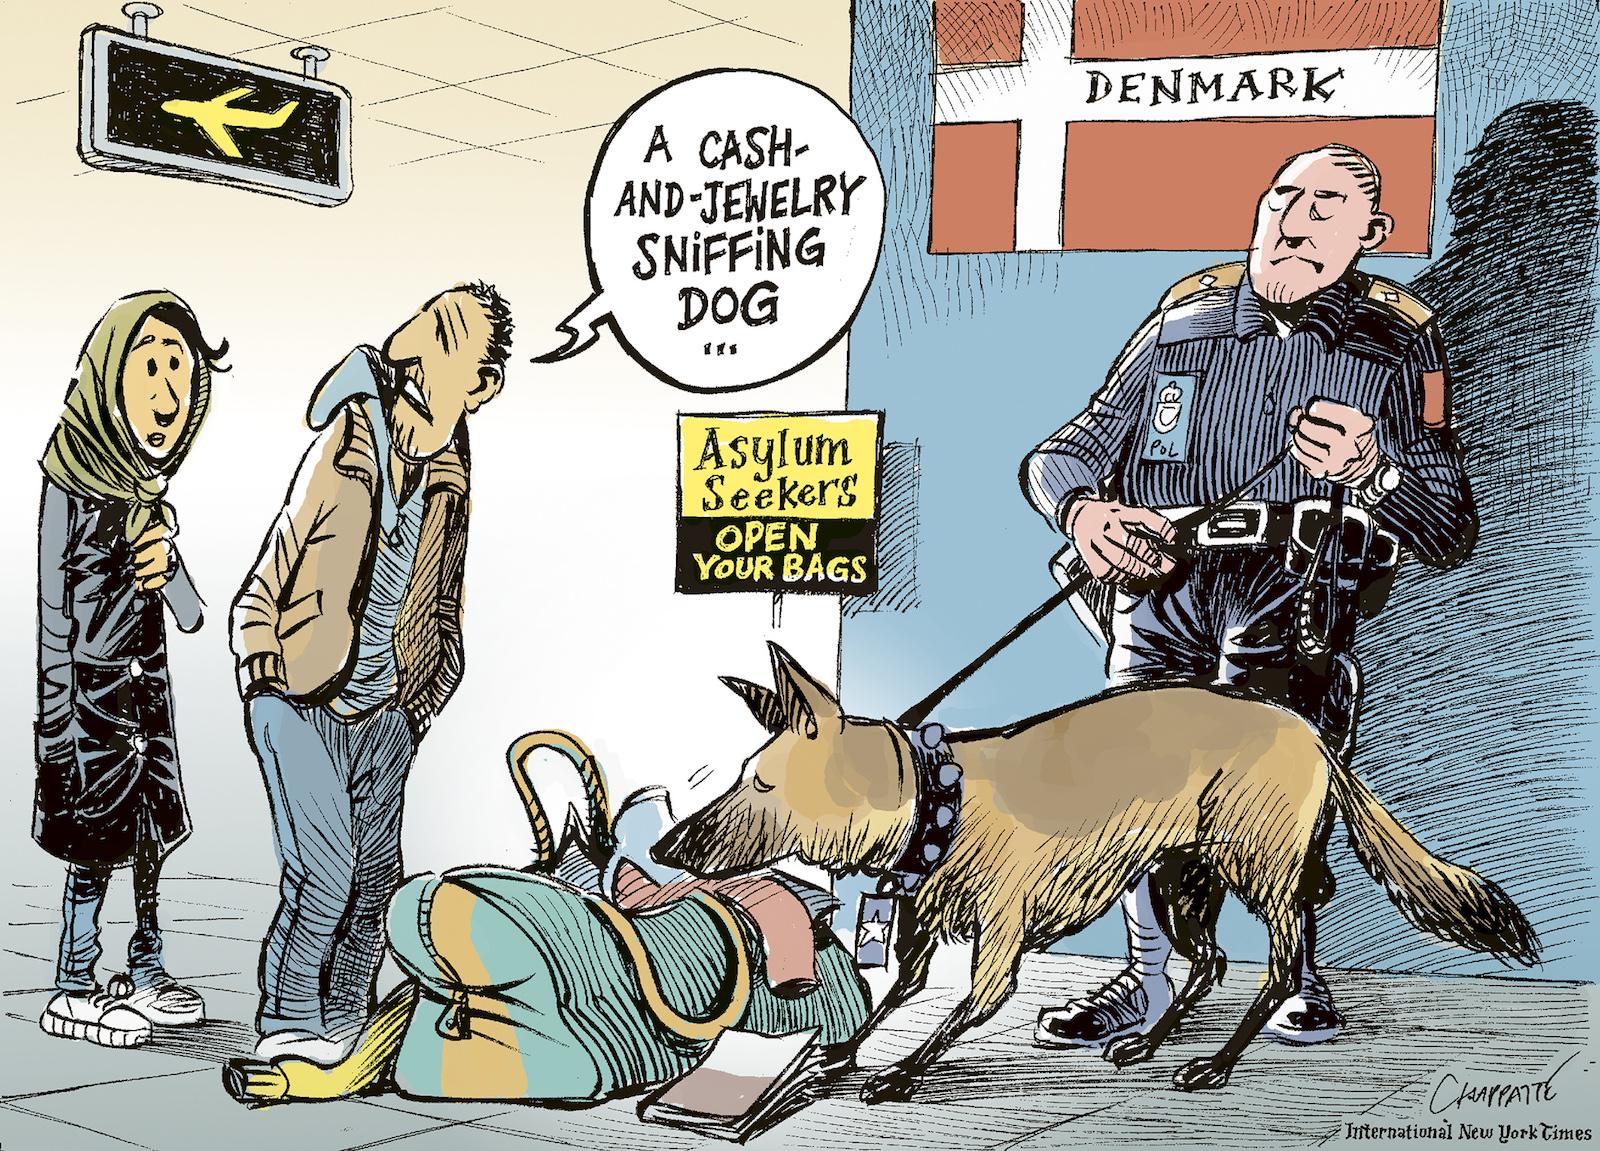 Denmark seizes assets of refugees